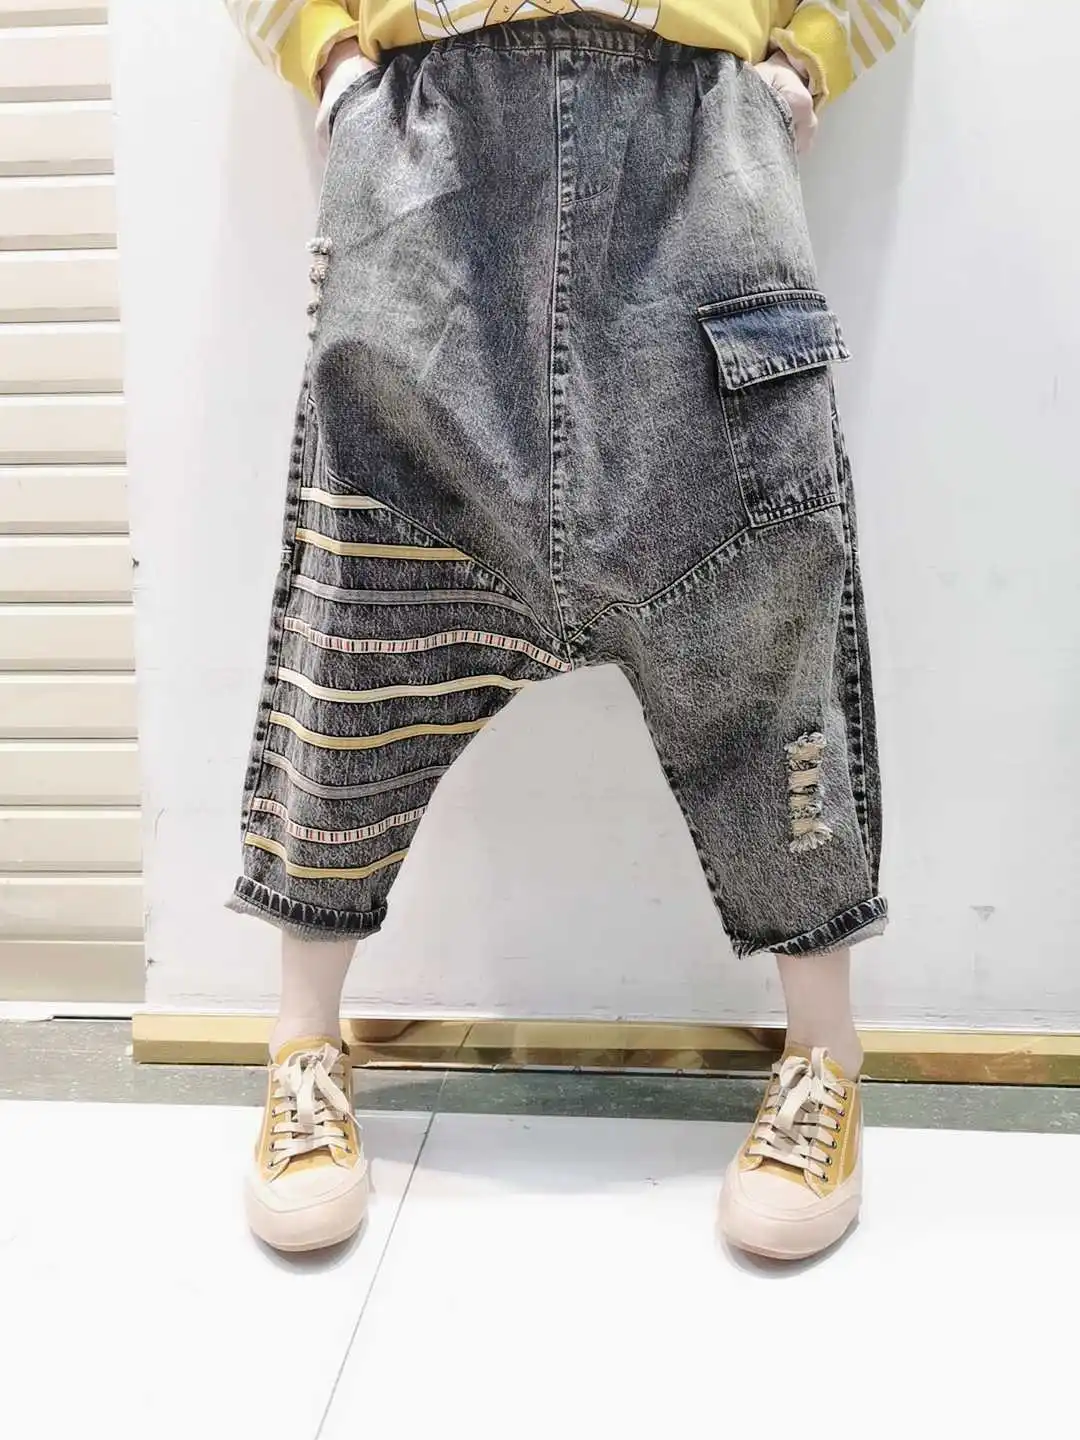 

Джинсы-шаровары мешковатые в стиле хип-хоп, джинсовые брюки-султанки с карманами, с эластичным поясом, уличная одежда в японском стиле